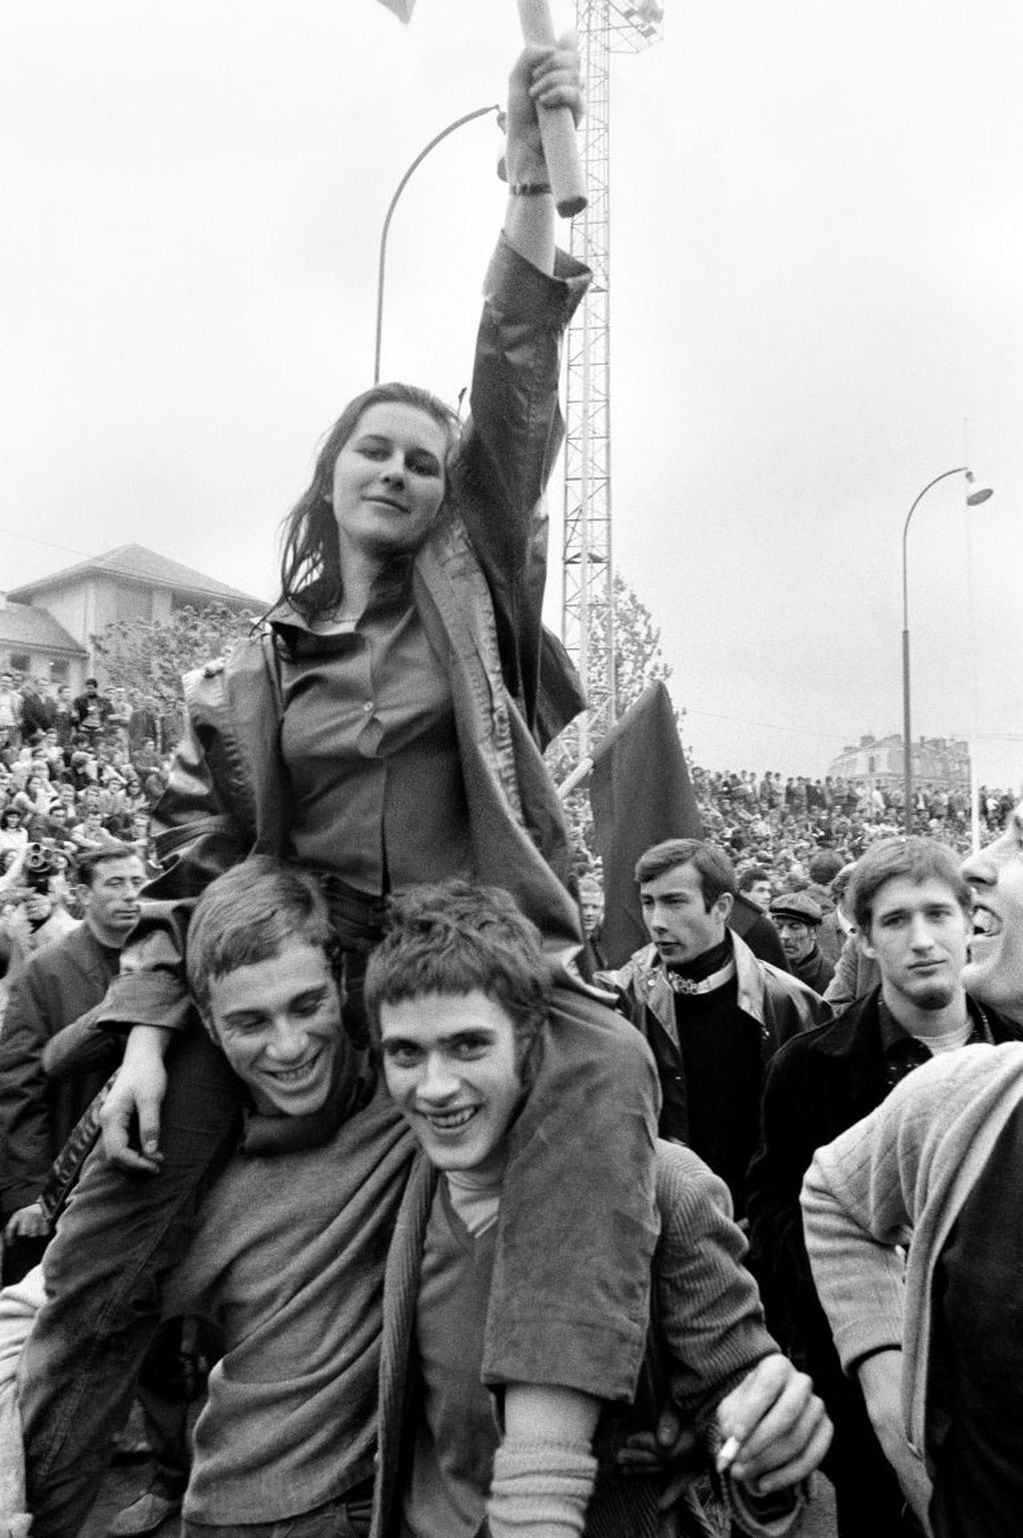 Qué caminos tomaron las vidas de estos jóvenes luego de 1968. (Getty Images)